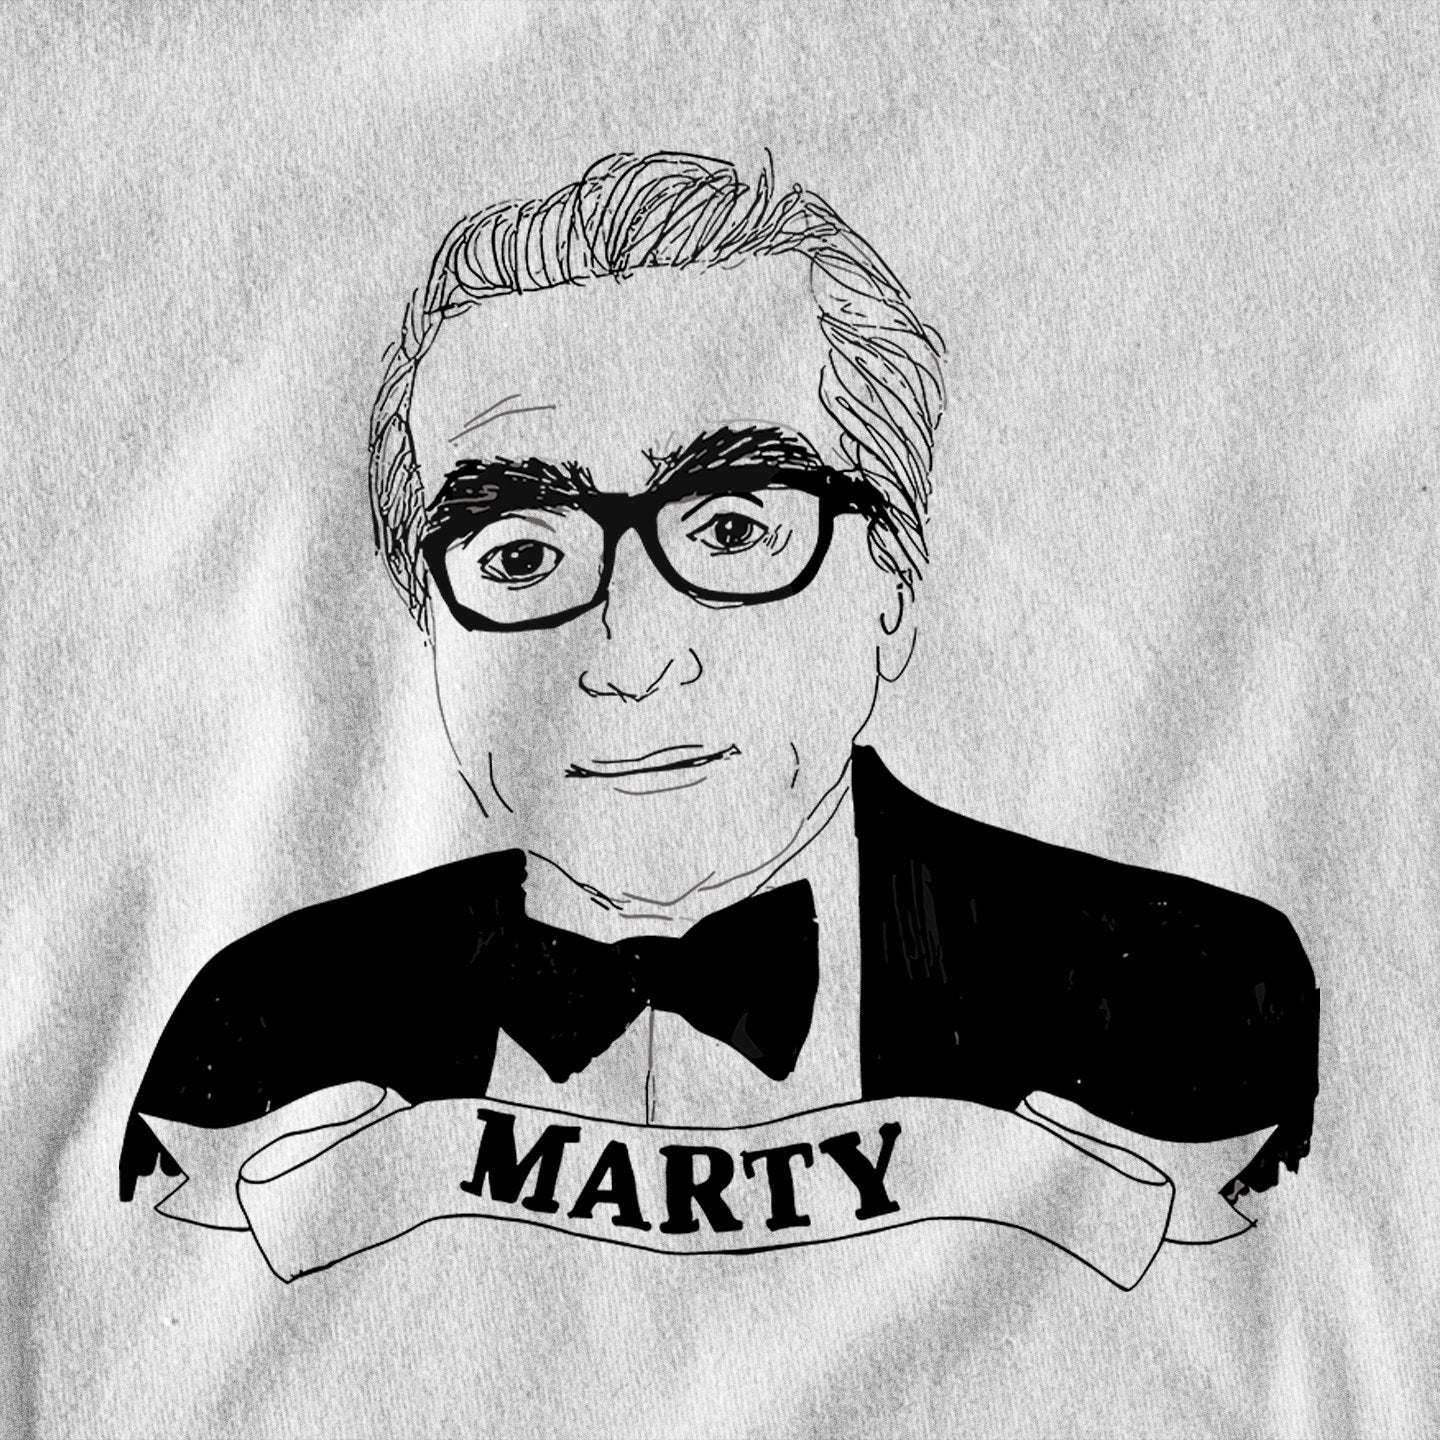 Marty - Sweatshirt